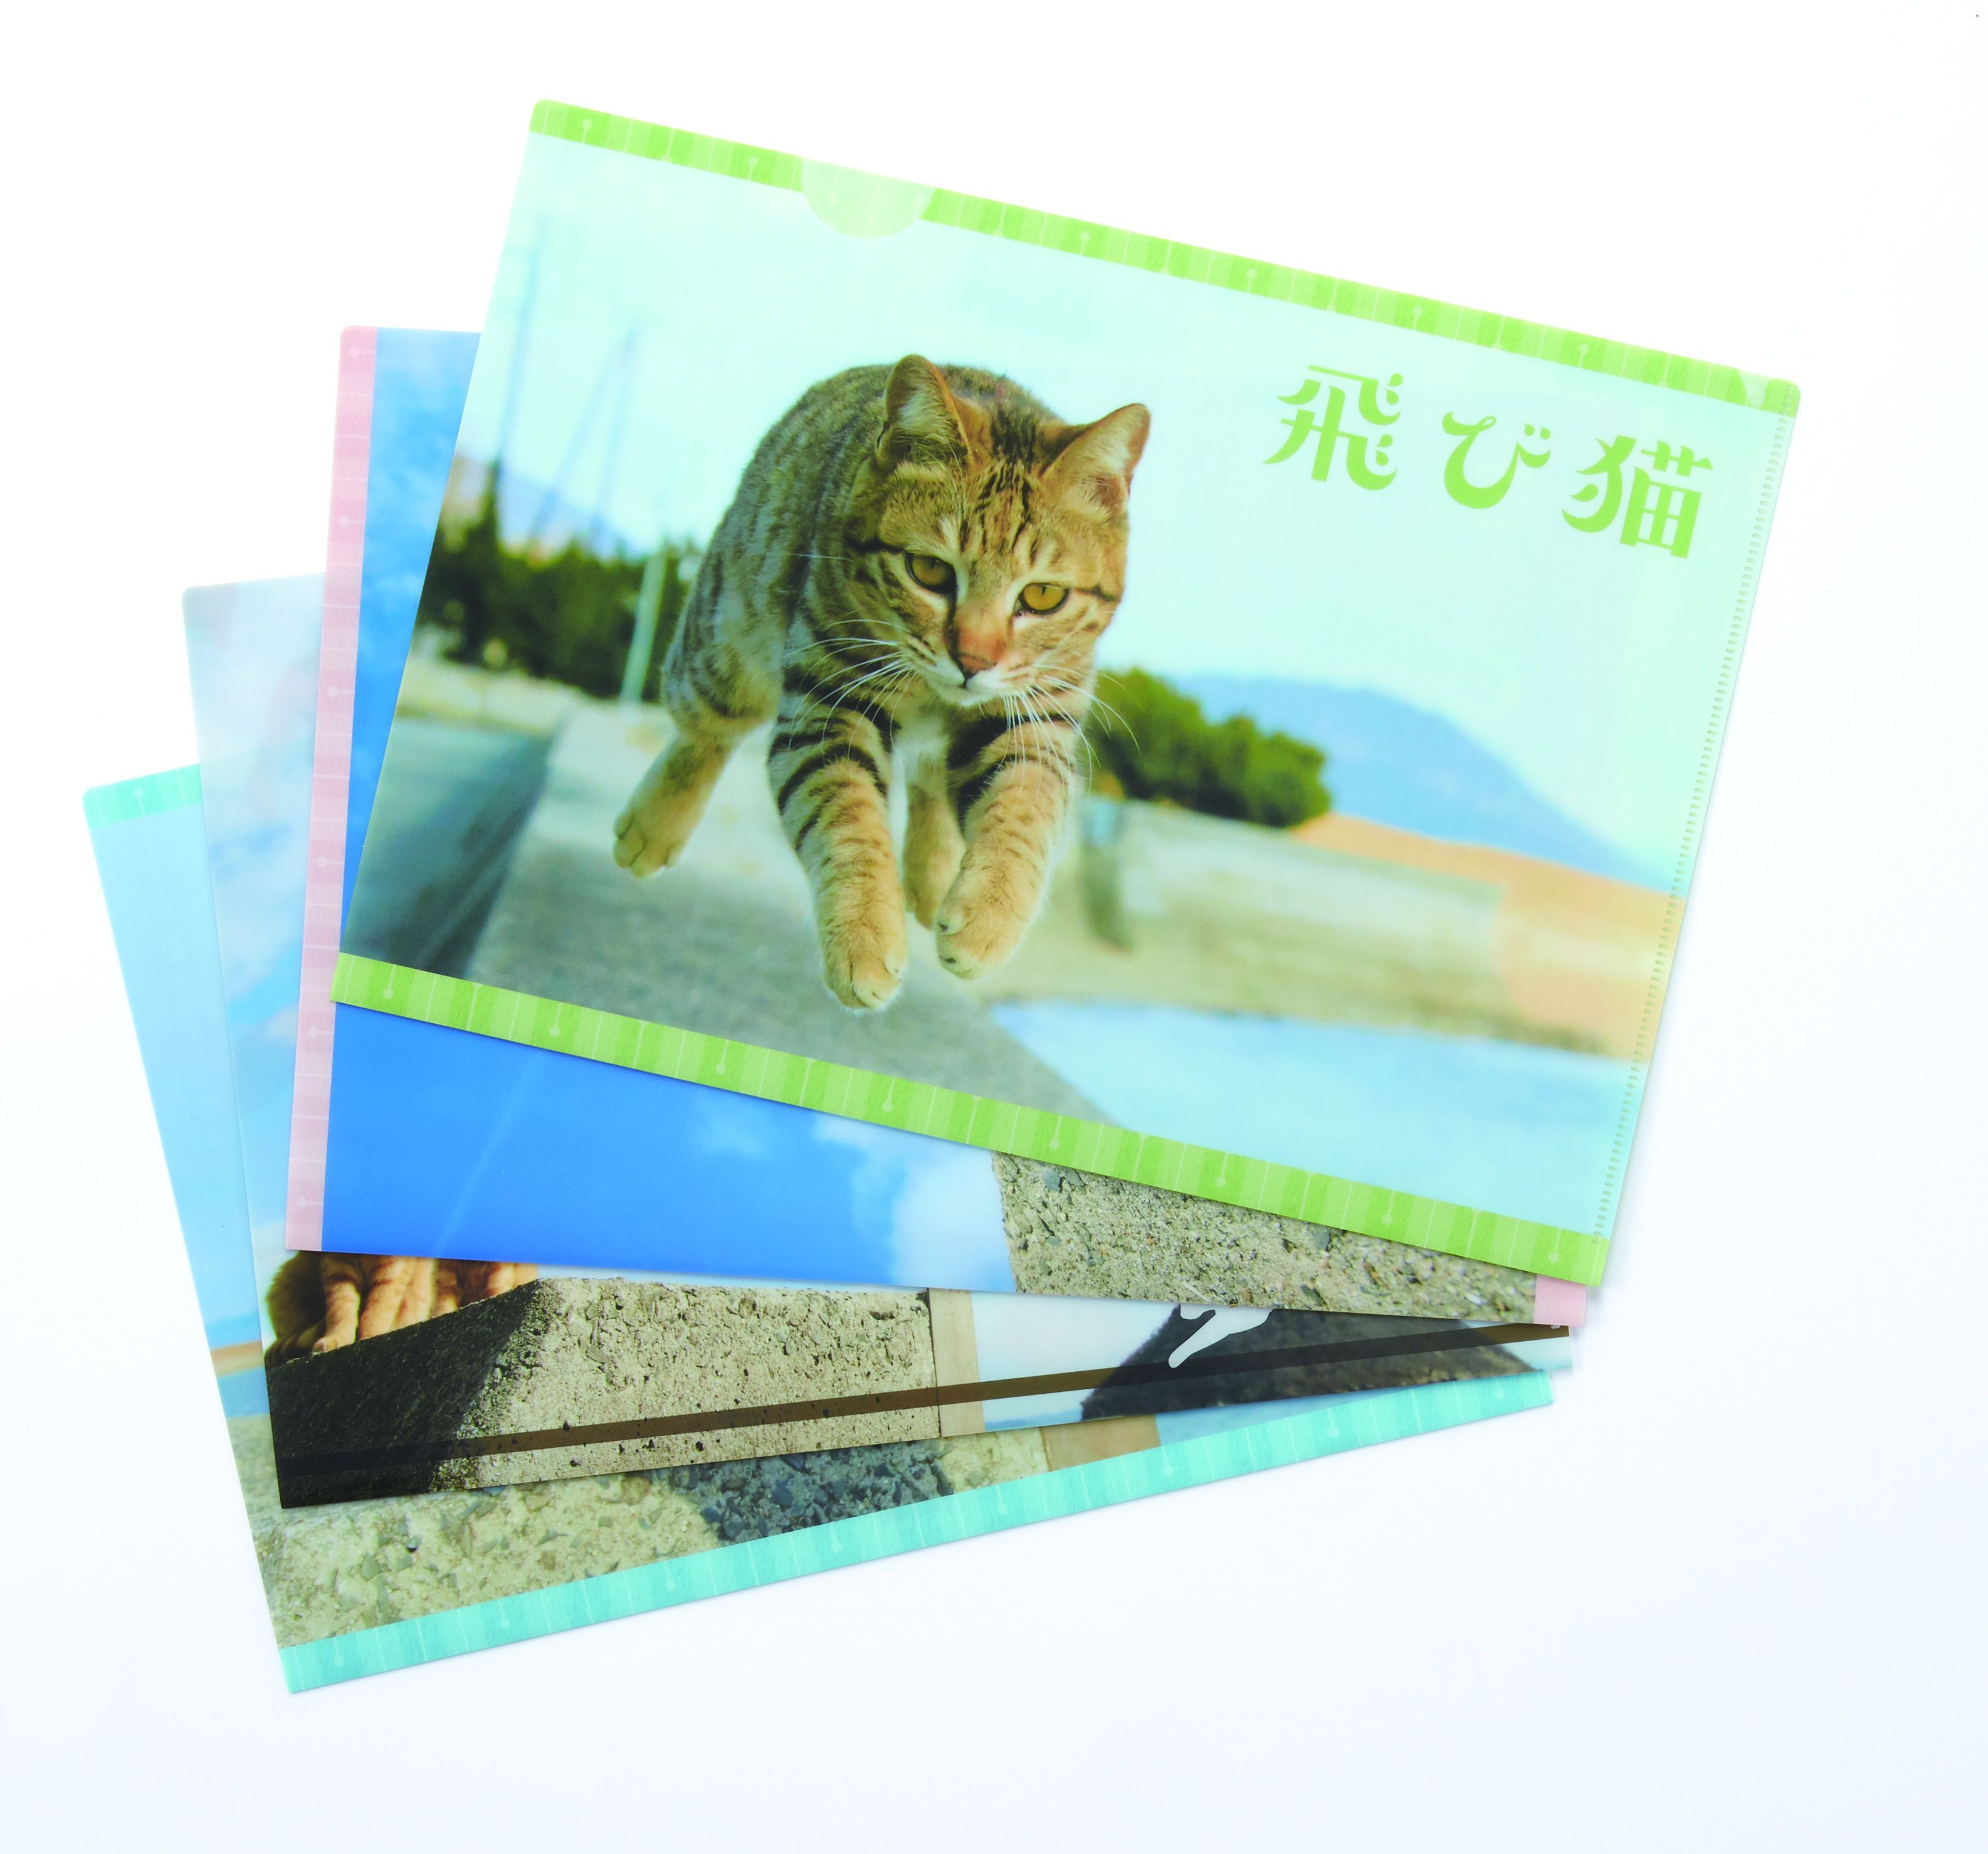 年に一度 猫好きさんのモチベーションが最も上がる日 新宿小田急で猫グッズのほか 猫型お弁当 を販売 株式会社小田急百貨店のプレスリリース